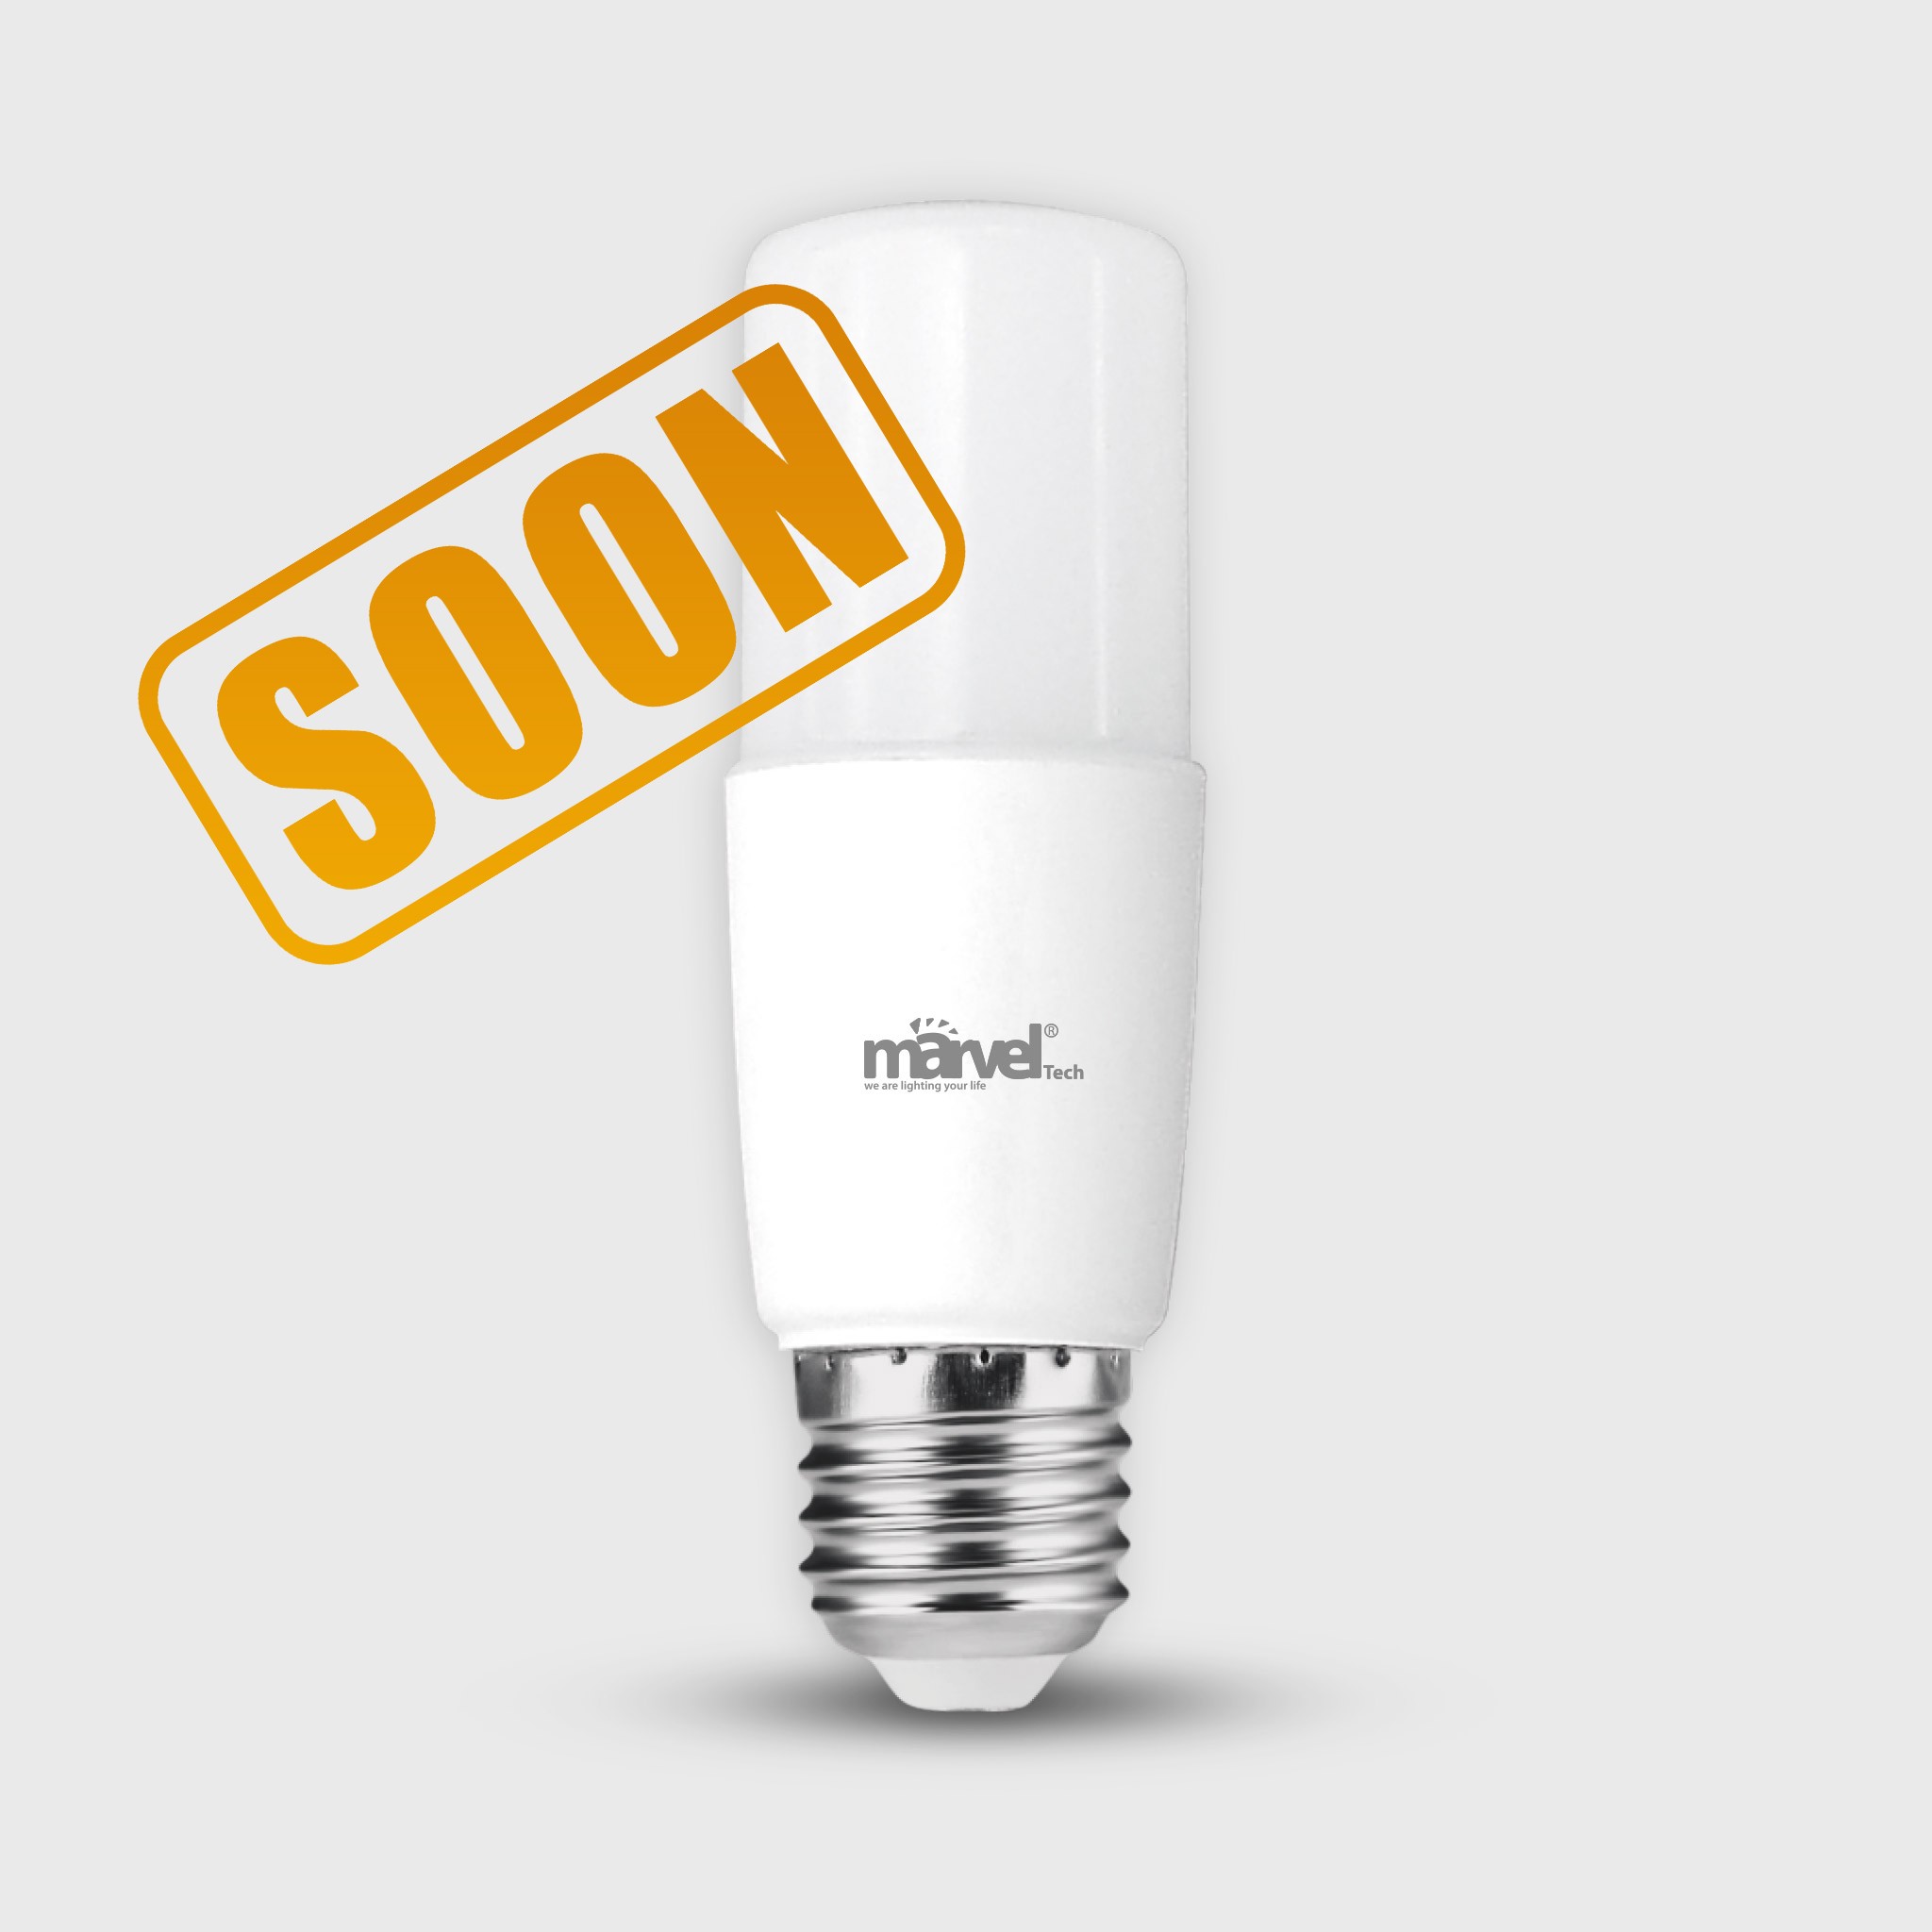 MS-22453 T37 LED Column Bulb 6W DL